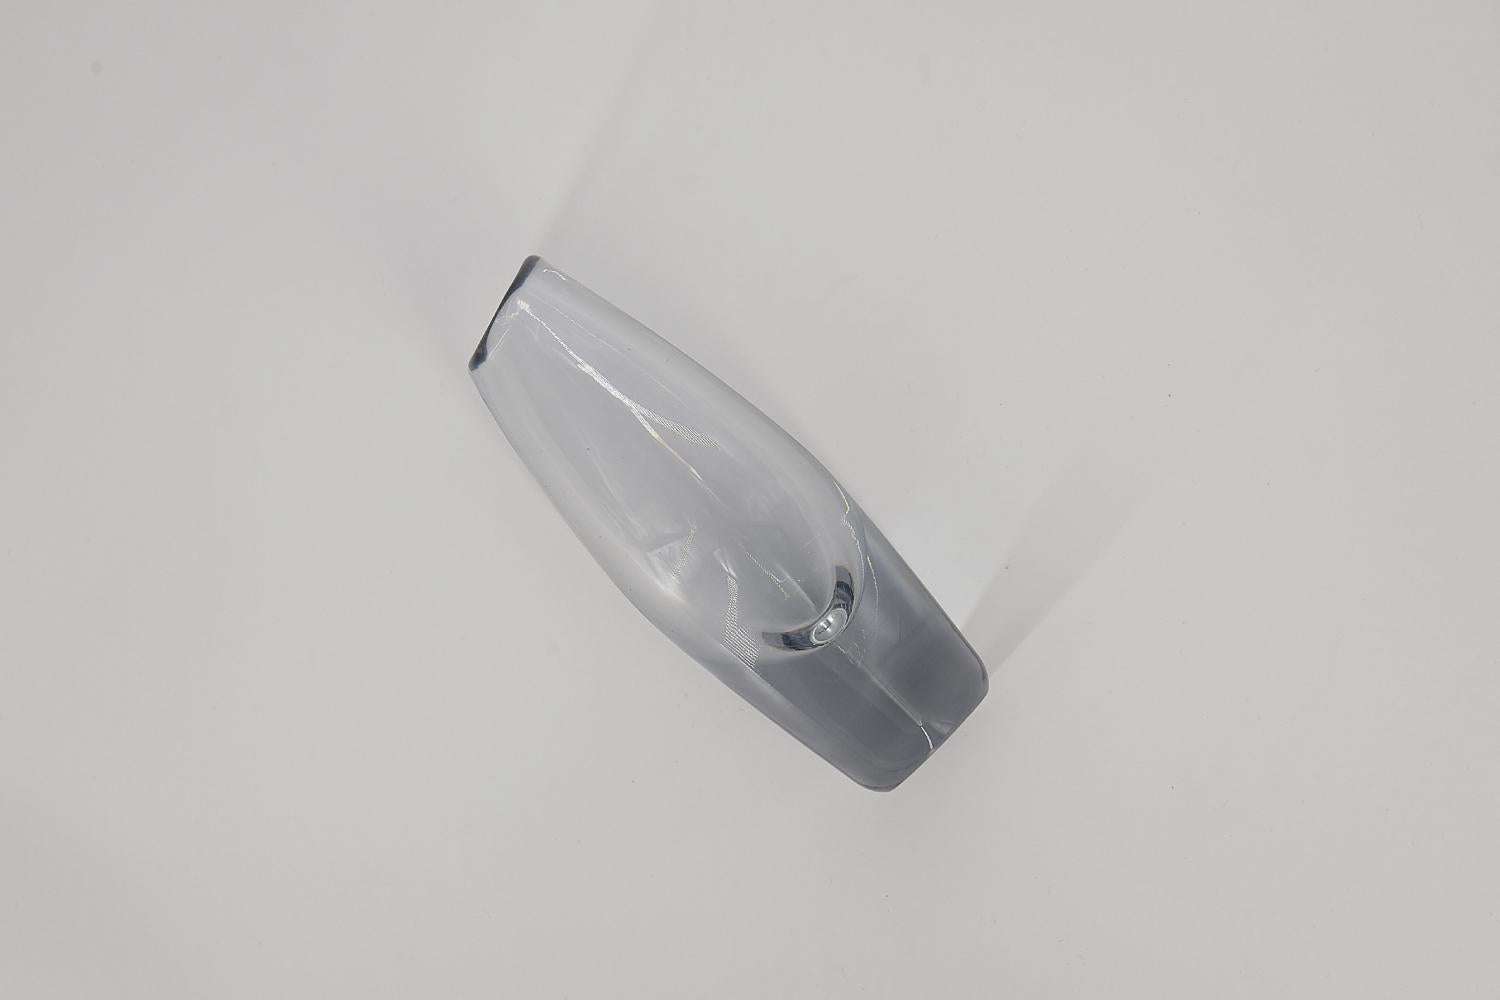 Ce vase transparent a été conçu par Sven Palmquist pour la verrerie suédoise Orrefors dans les années 1950. Le vase est en verre d'art.

Sven Palmquist est né en 1906 à Lenhovda, en Suède. Il est surtout connu pour sa collaboration avec la